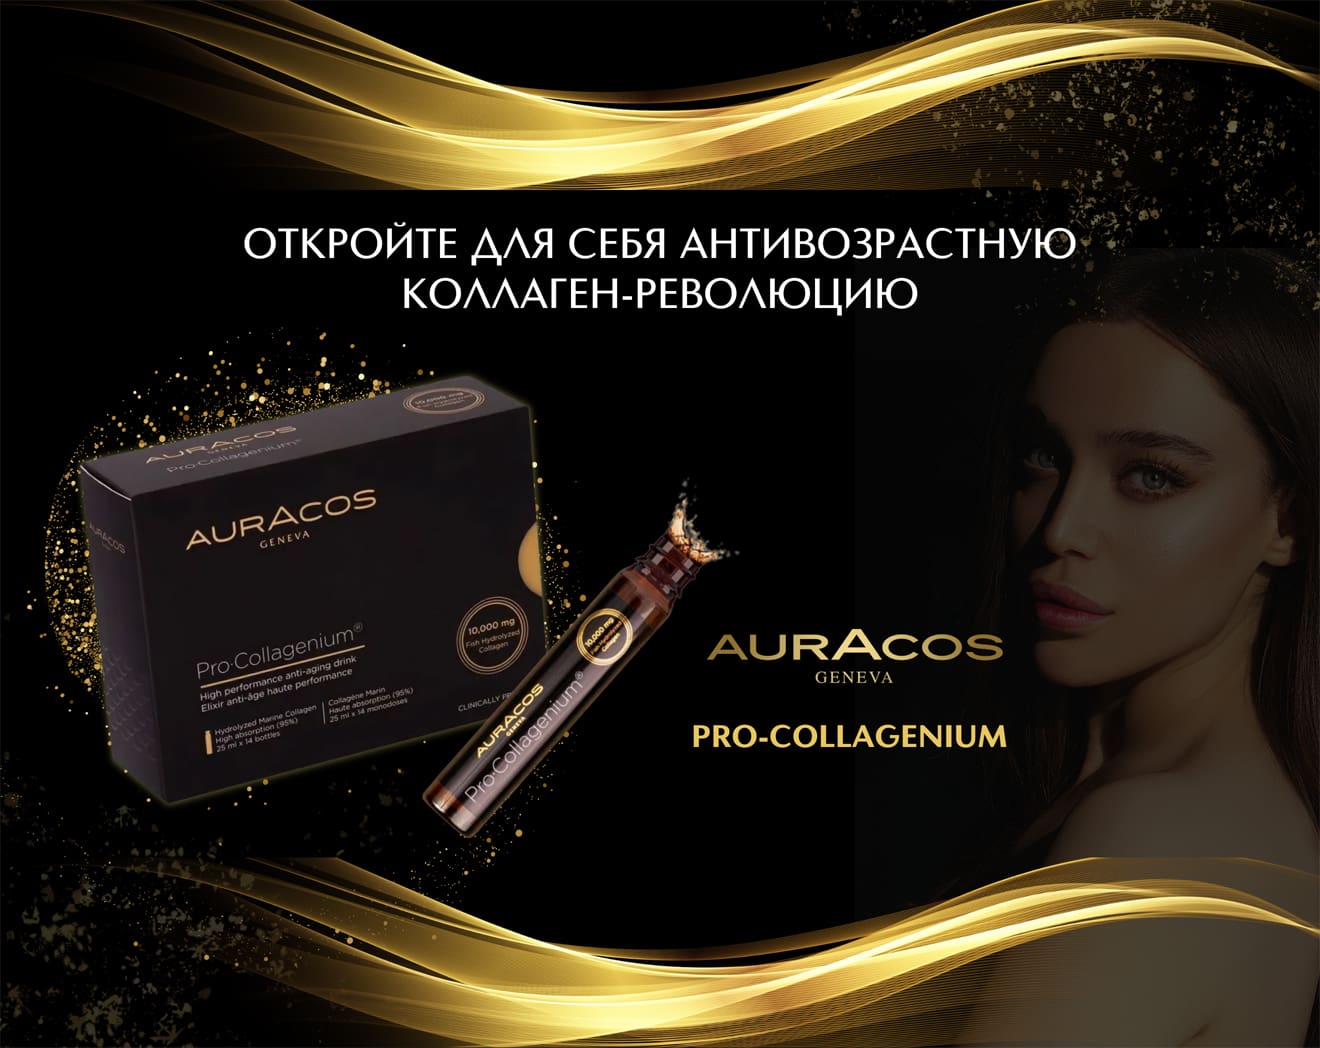 Встречайте новый бренд AURACOS в ИЛЬ ДЕ БОТЭ!